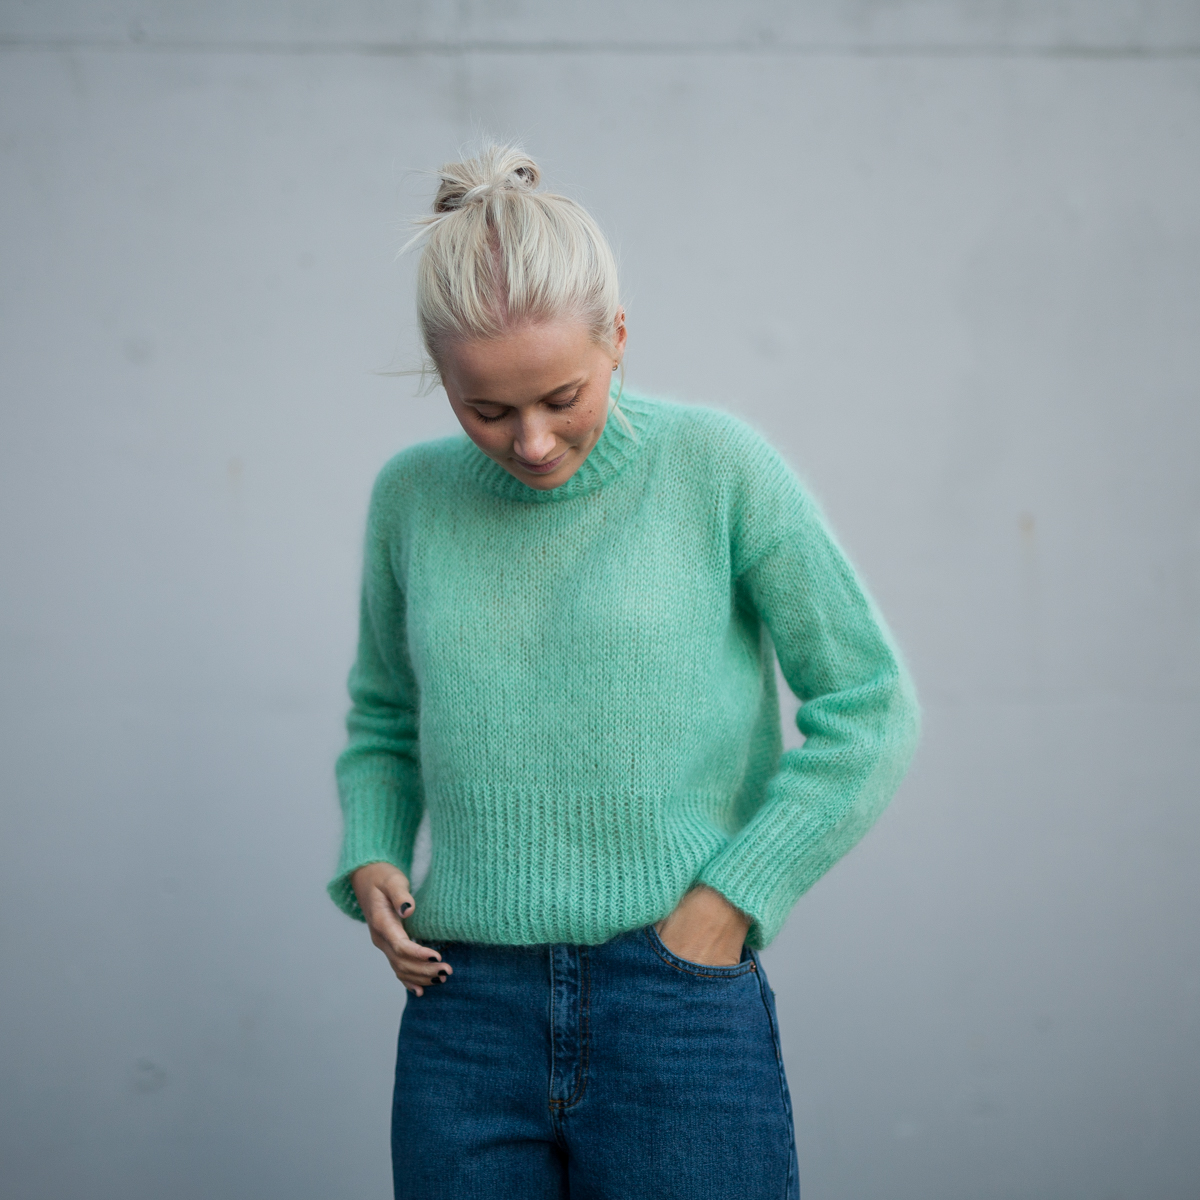 mohair genser oppskrift - Elvira Sweater | Turtleneck sweater women knitting kit - by HipKnitShop - 03/09/2018